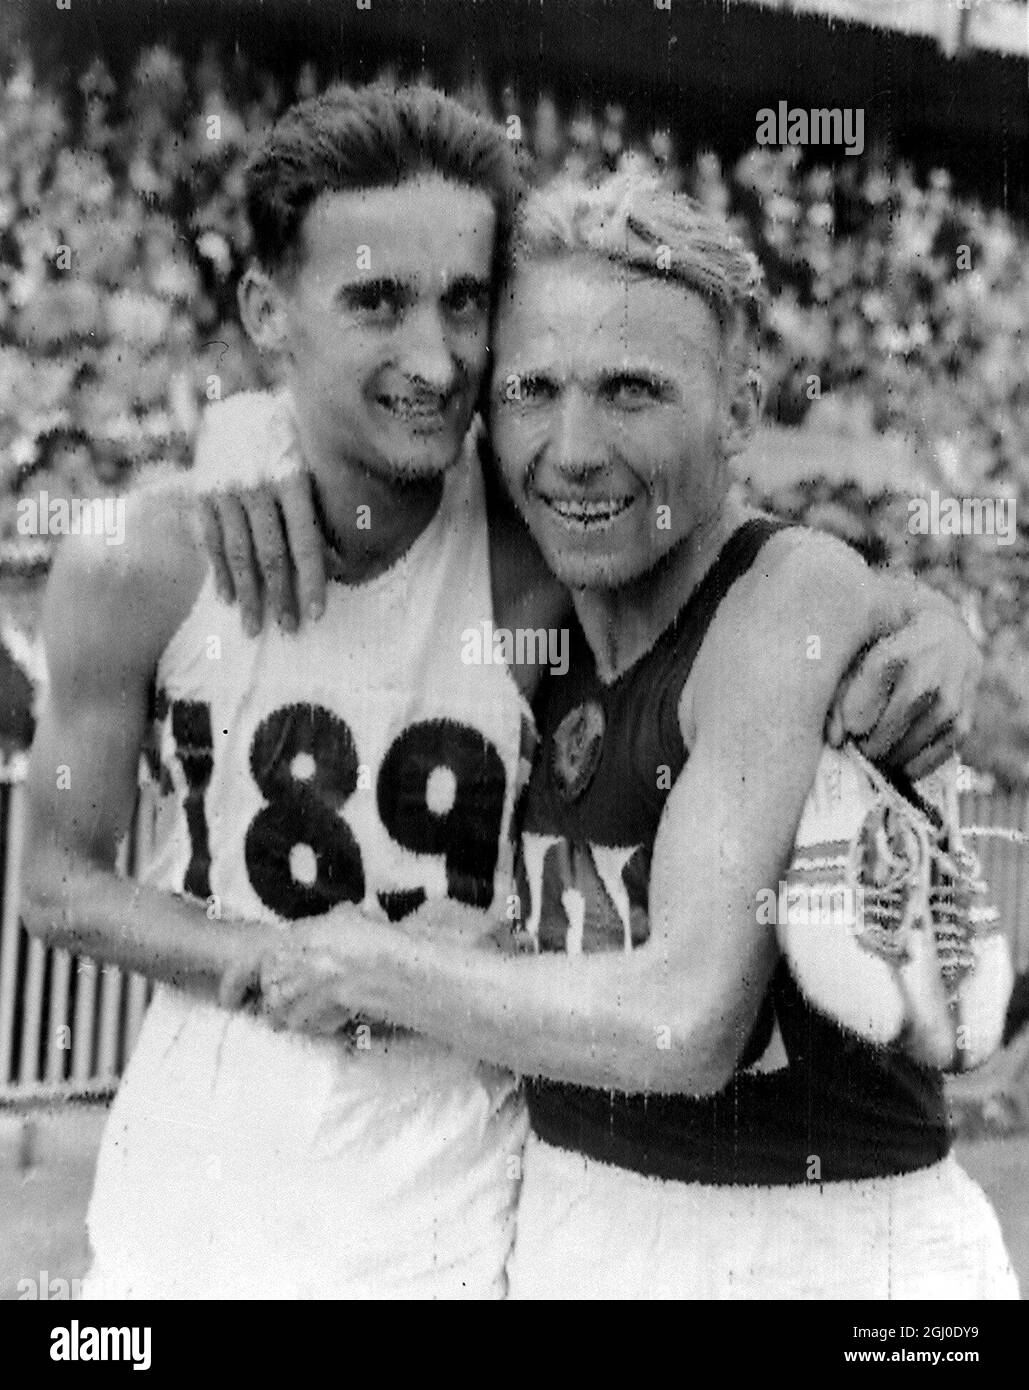 Les Jeux Olympiques de Melbourne 1956 Vladimir Kuts (à droite) de Russie et Gordon Pirie de Grande-Bretagne embrassent après que Kuts a remporté la finale de 5000m, Pirie est arrivé deuxième. 28 novembre 1956 Banque D'Images